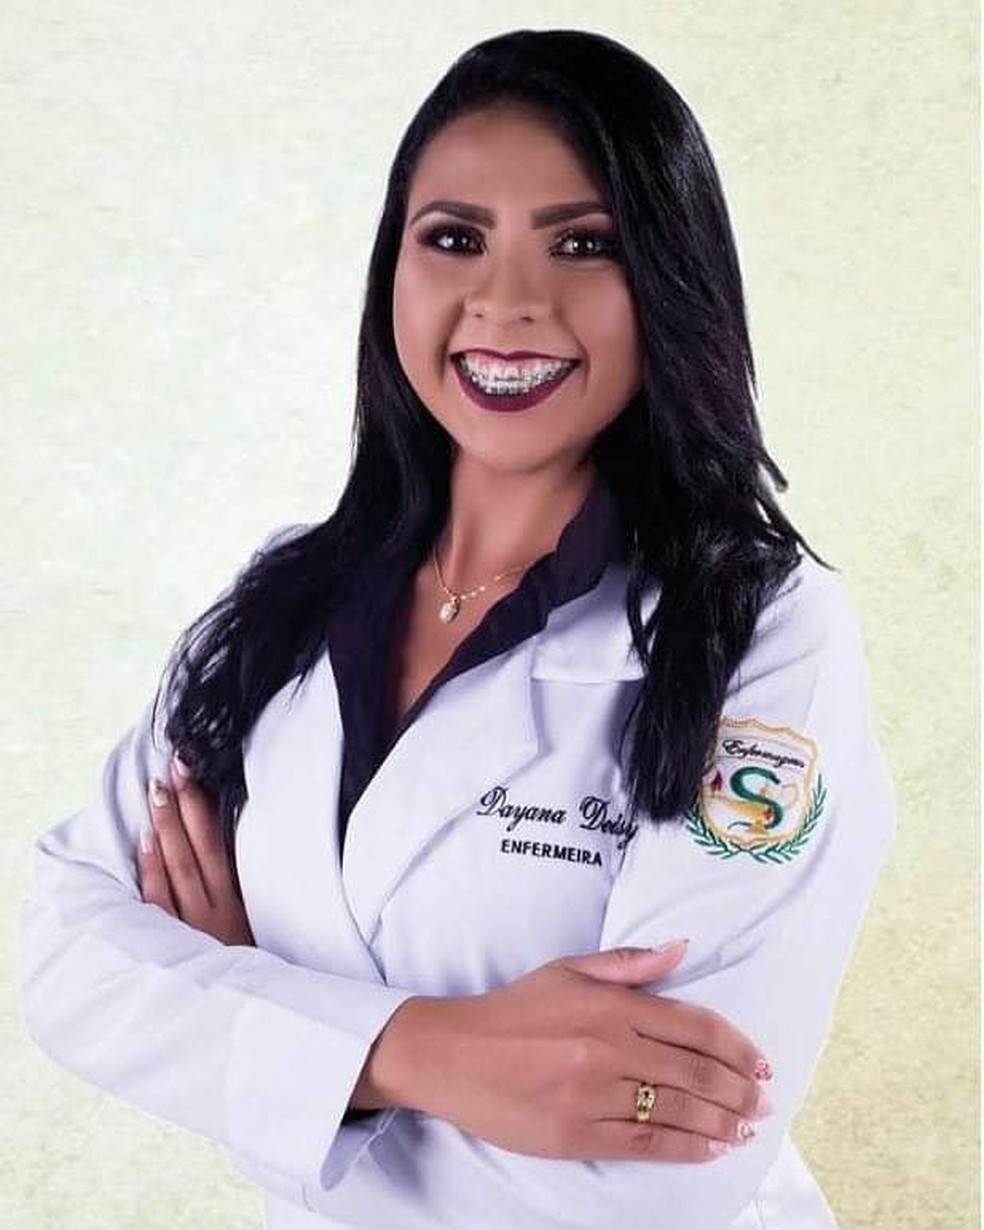 Dayana Deisy Oliveira de Lima tinha 29 anos e era técnica de enfermagem — Foto: Cedida